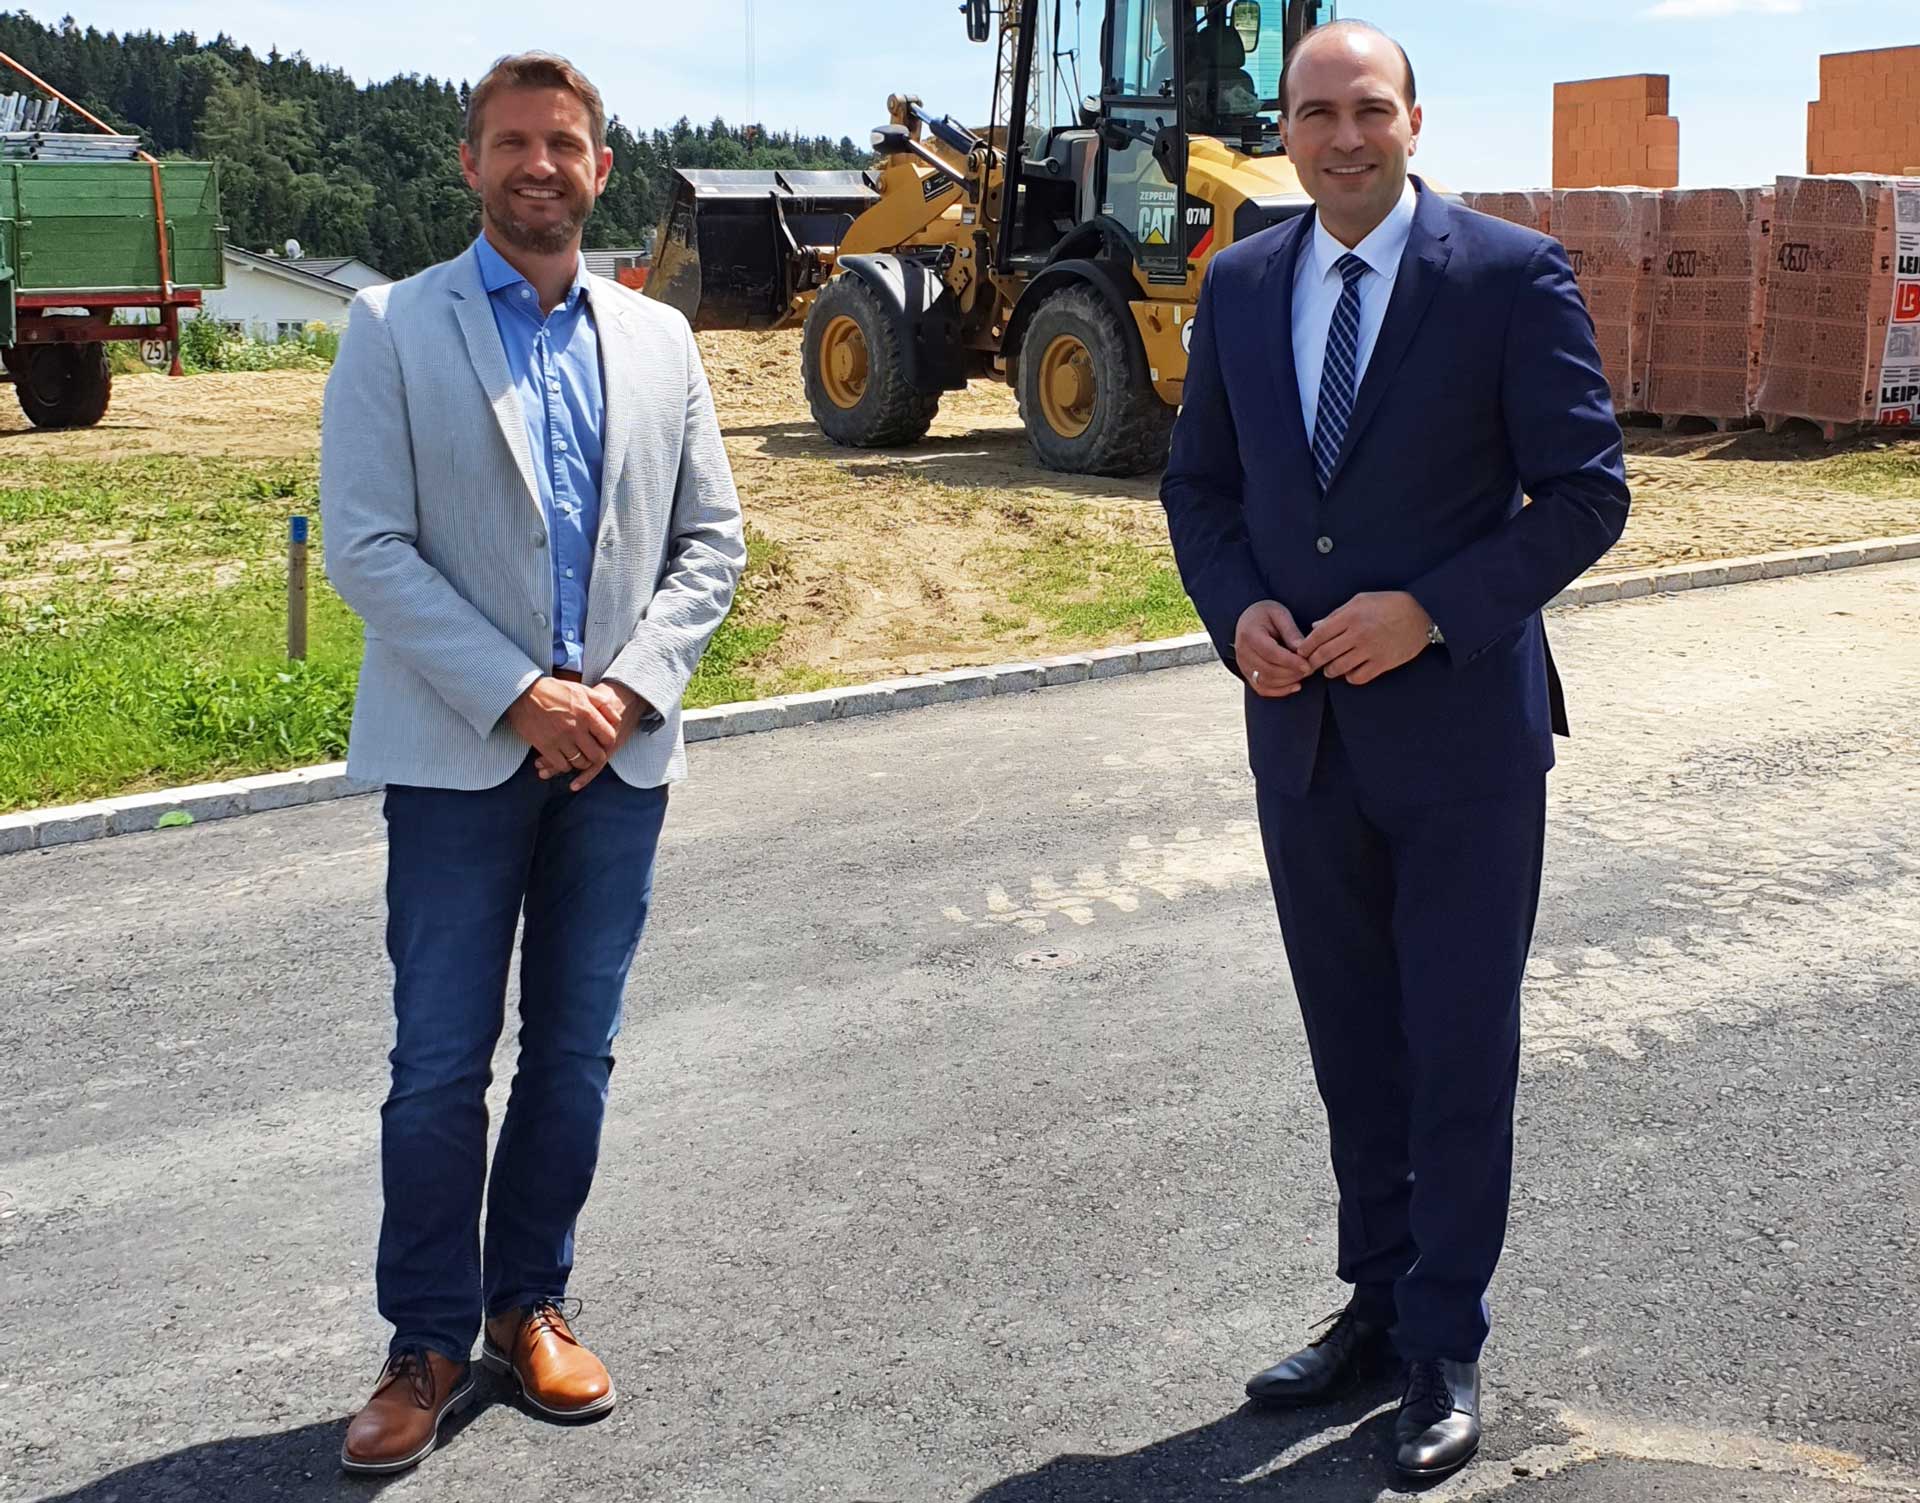 Echings neu gewählter Bürgermeister Max Kofler sowie Bundestagsabgeordneter und Verkehrspolitiker Florian Oßner sprachen über ein anwendungsorientiertes Wasserstoff-Zentrum für die Region Landshut in der Gemeinde Eching. (Foto: CSU)